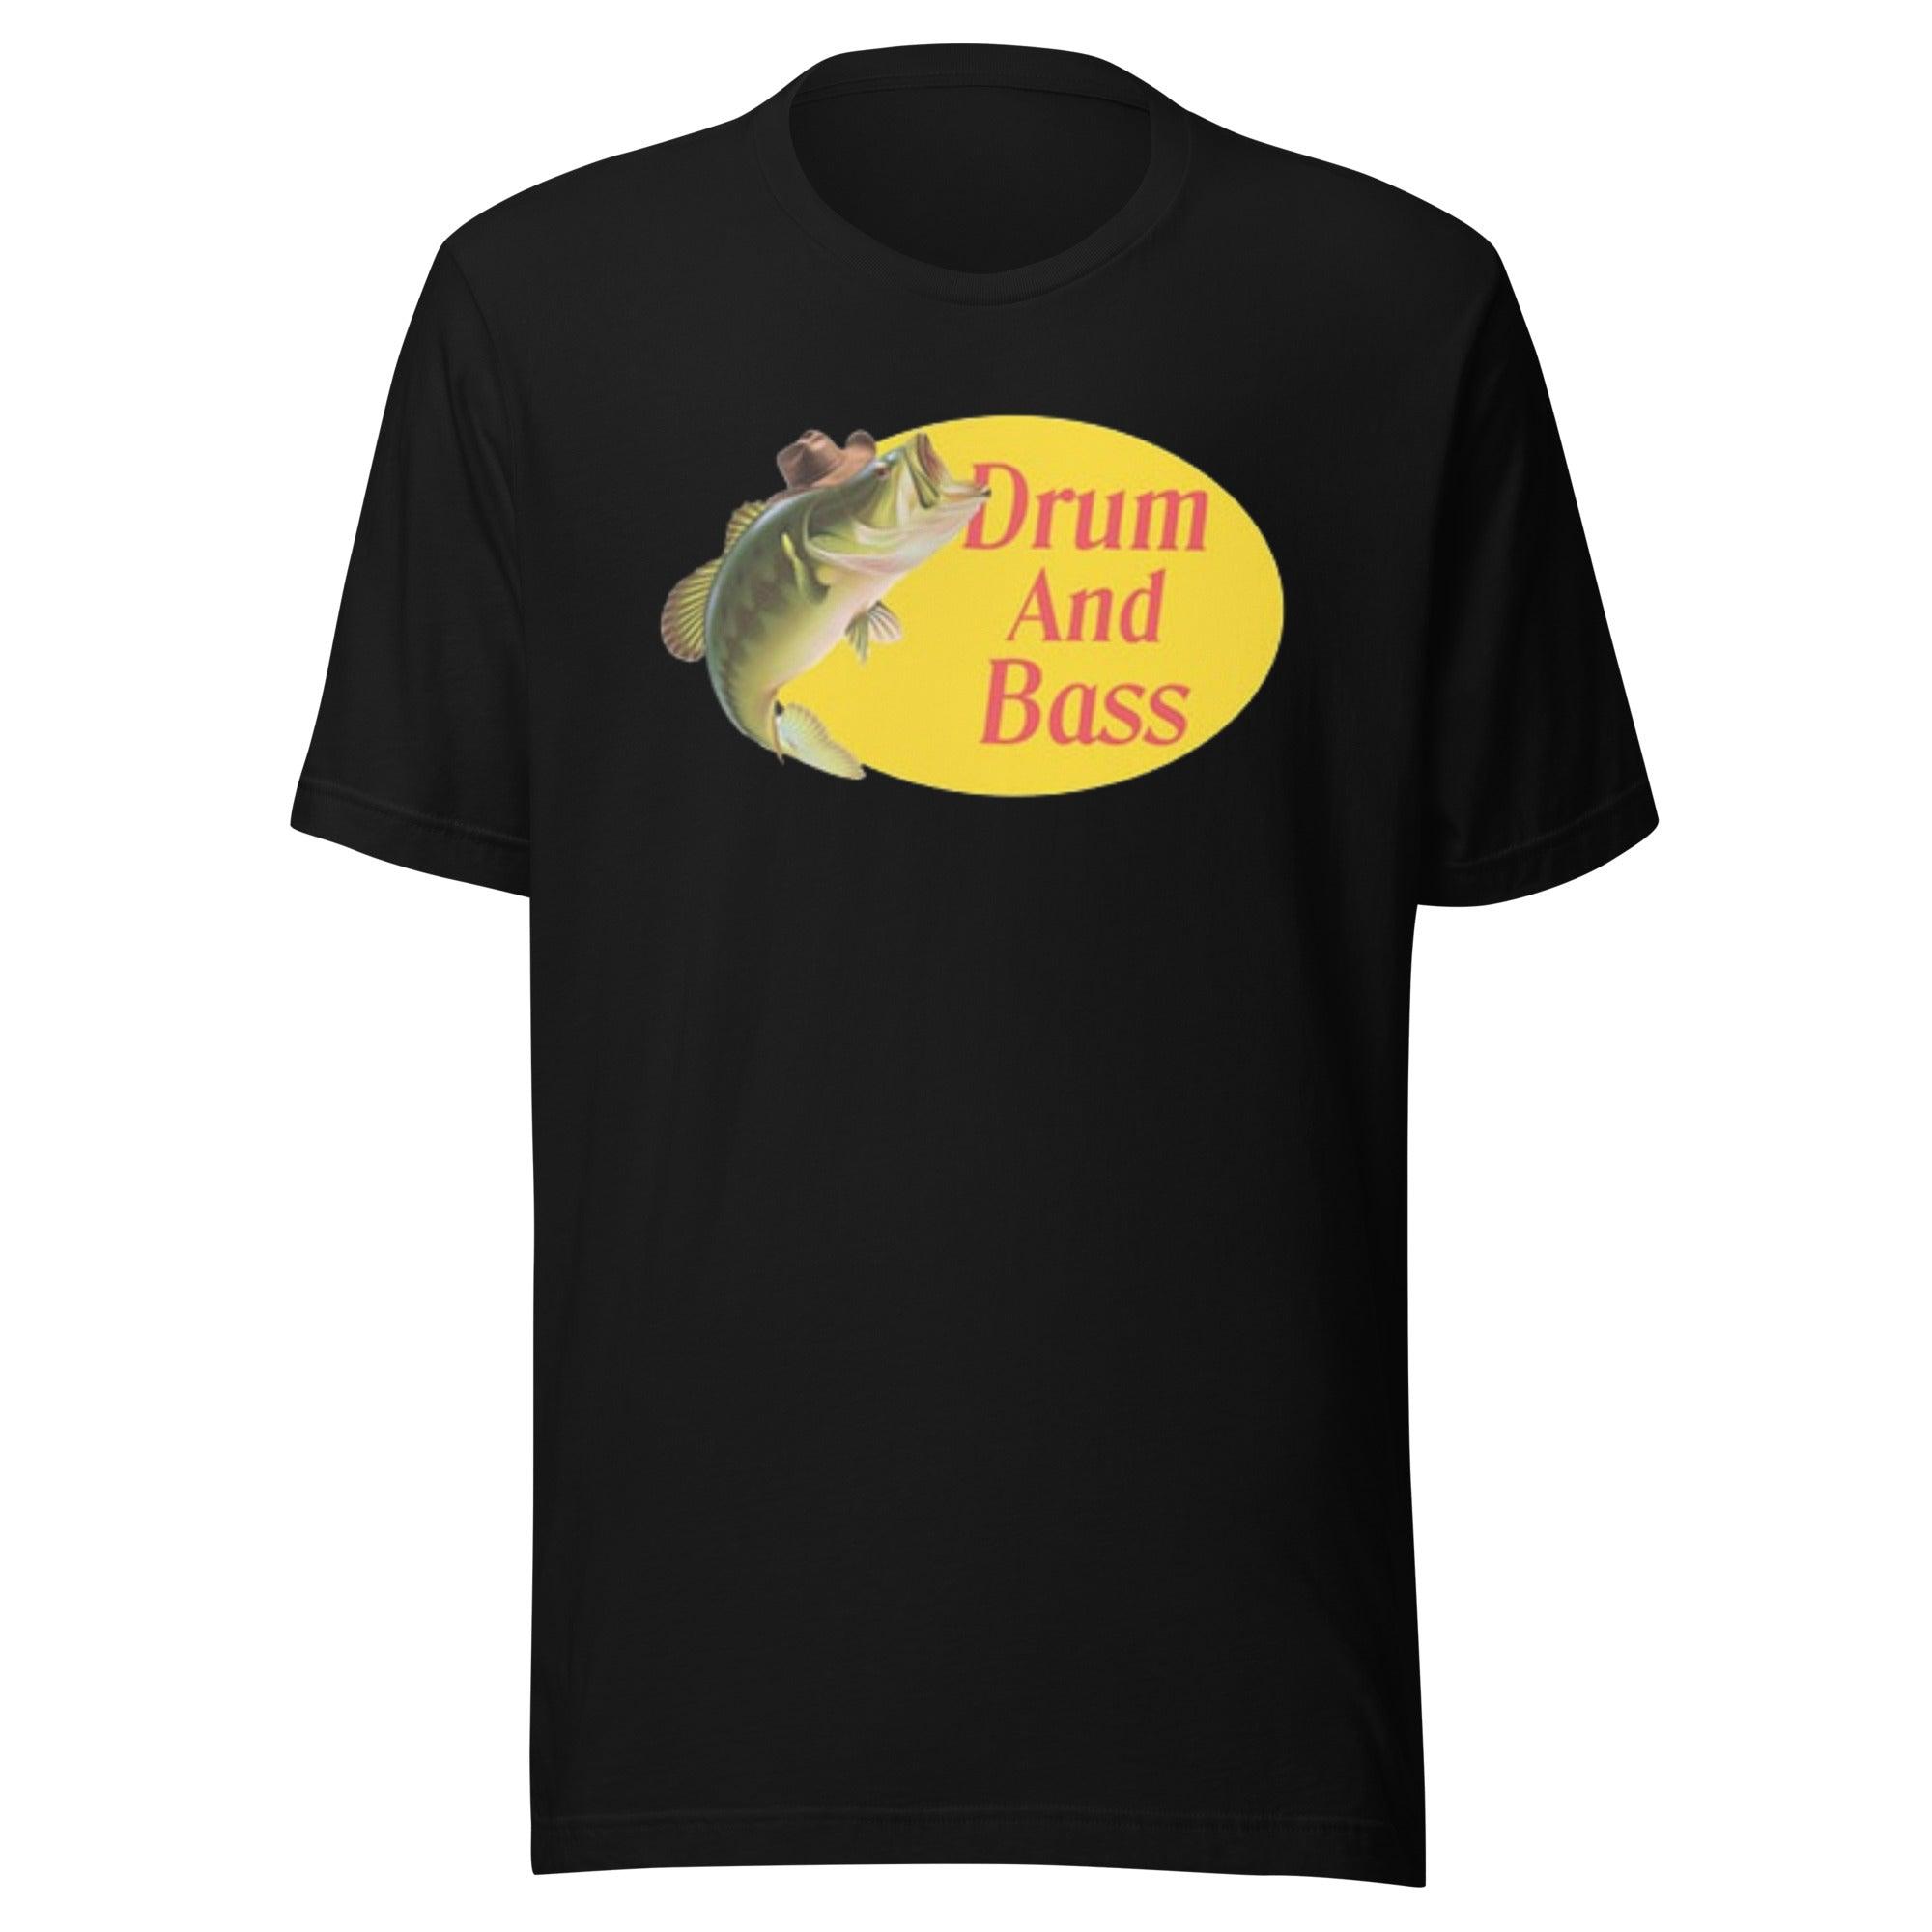 Fishing T-shirt Drum And Bass Short Sleeve 100% Cotton Crewneck Unisex Top - TopKoalaTee